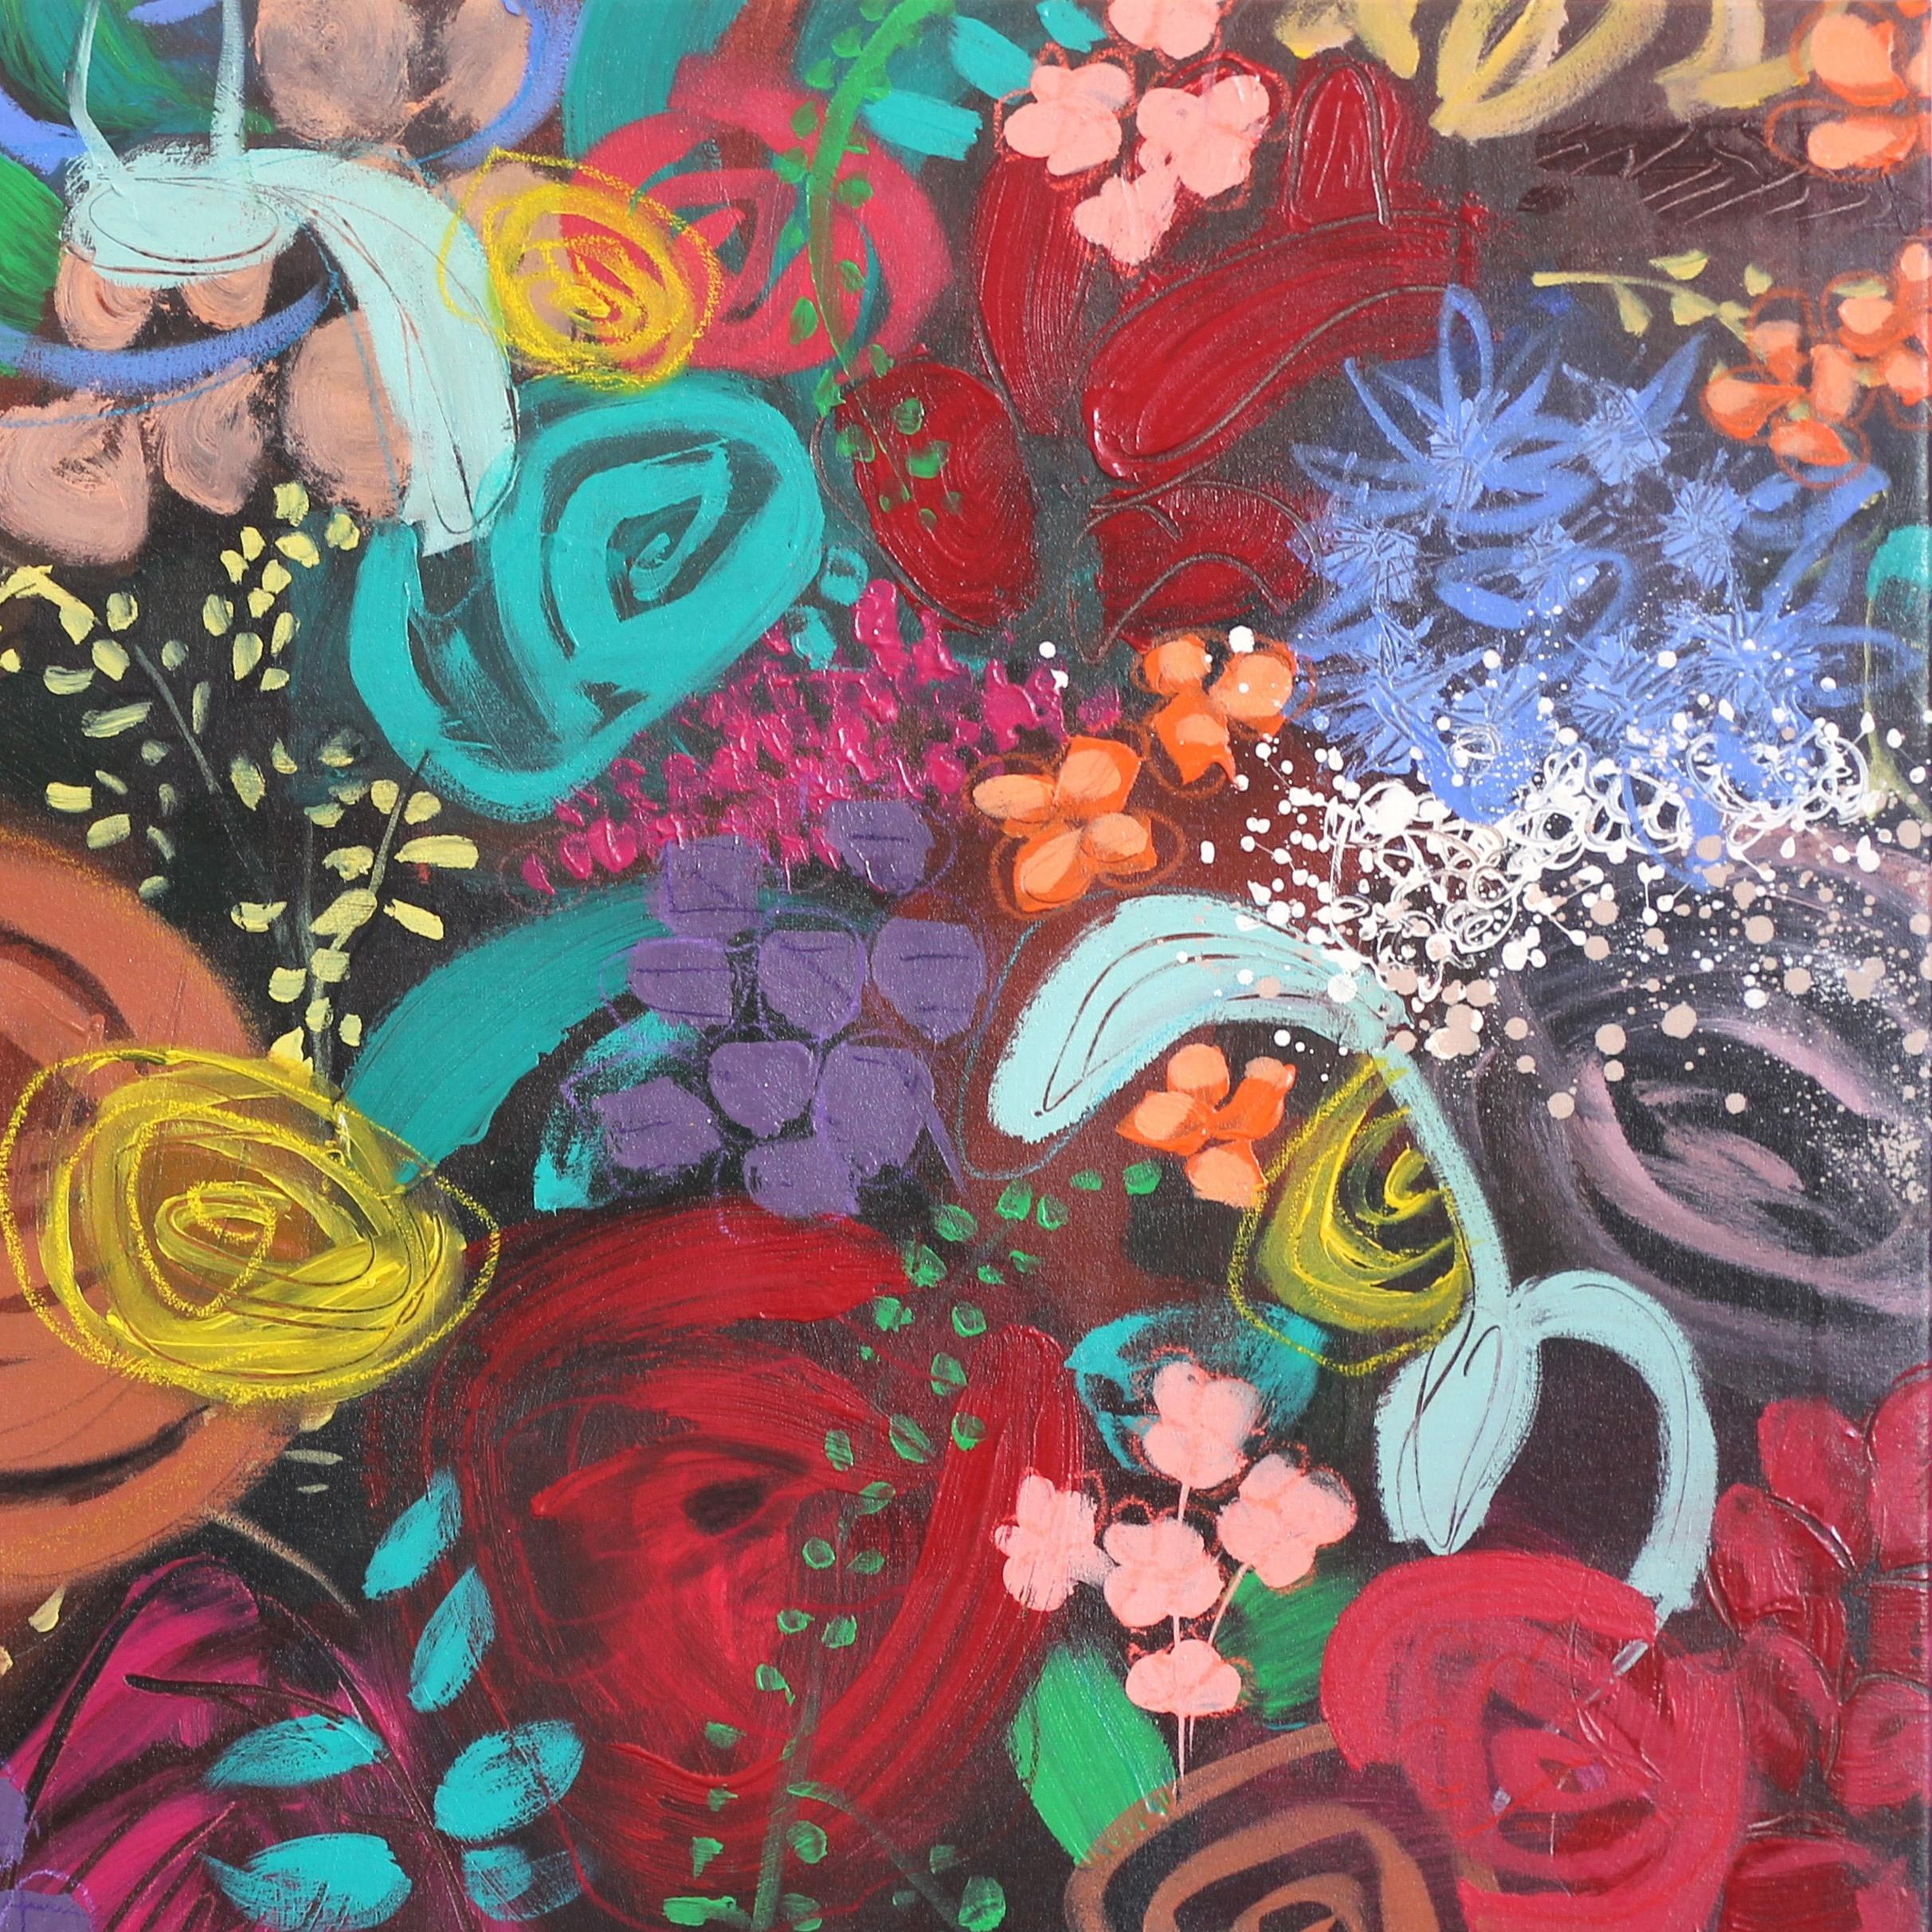 Les œuvres florales de l'artiste libano-américaine Sally K. sont à la fois dévorantes et stimulantes. Inspirée par la variété infinie de fleurs magnifiques, elle crée des peintures pop-réalistes qui parlent de l'expérience féminine énergique, de